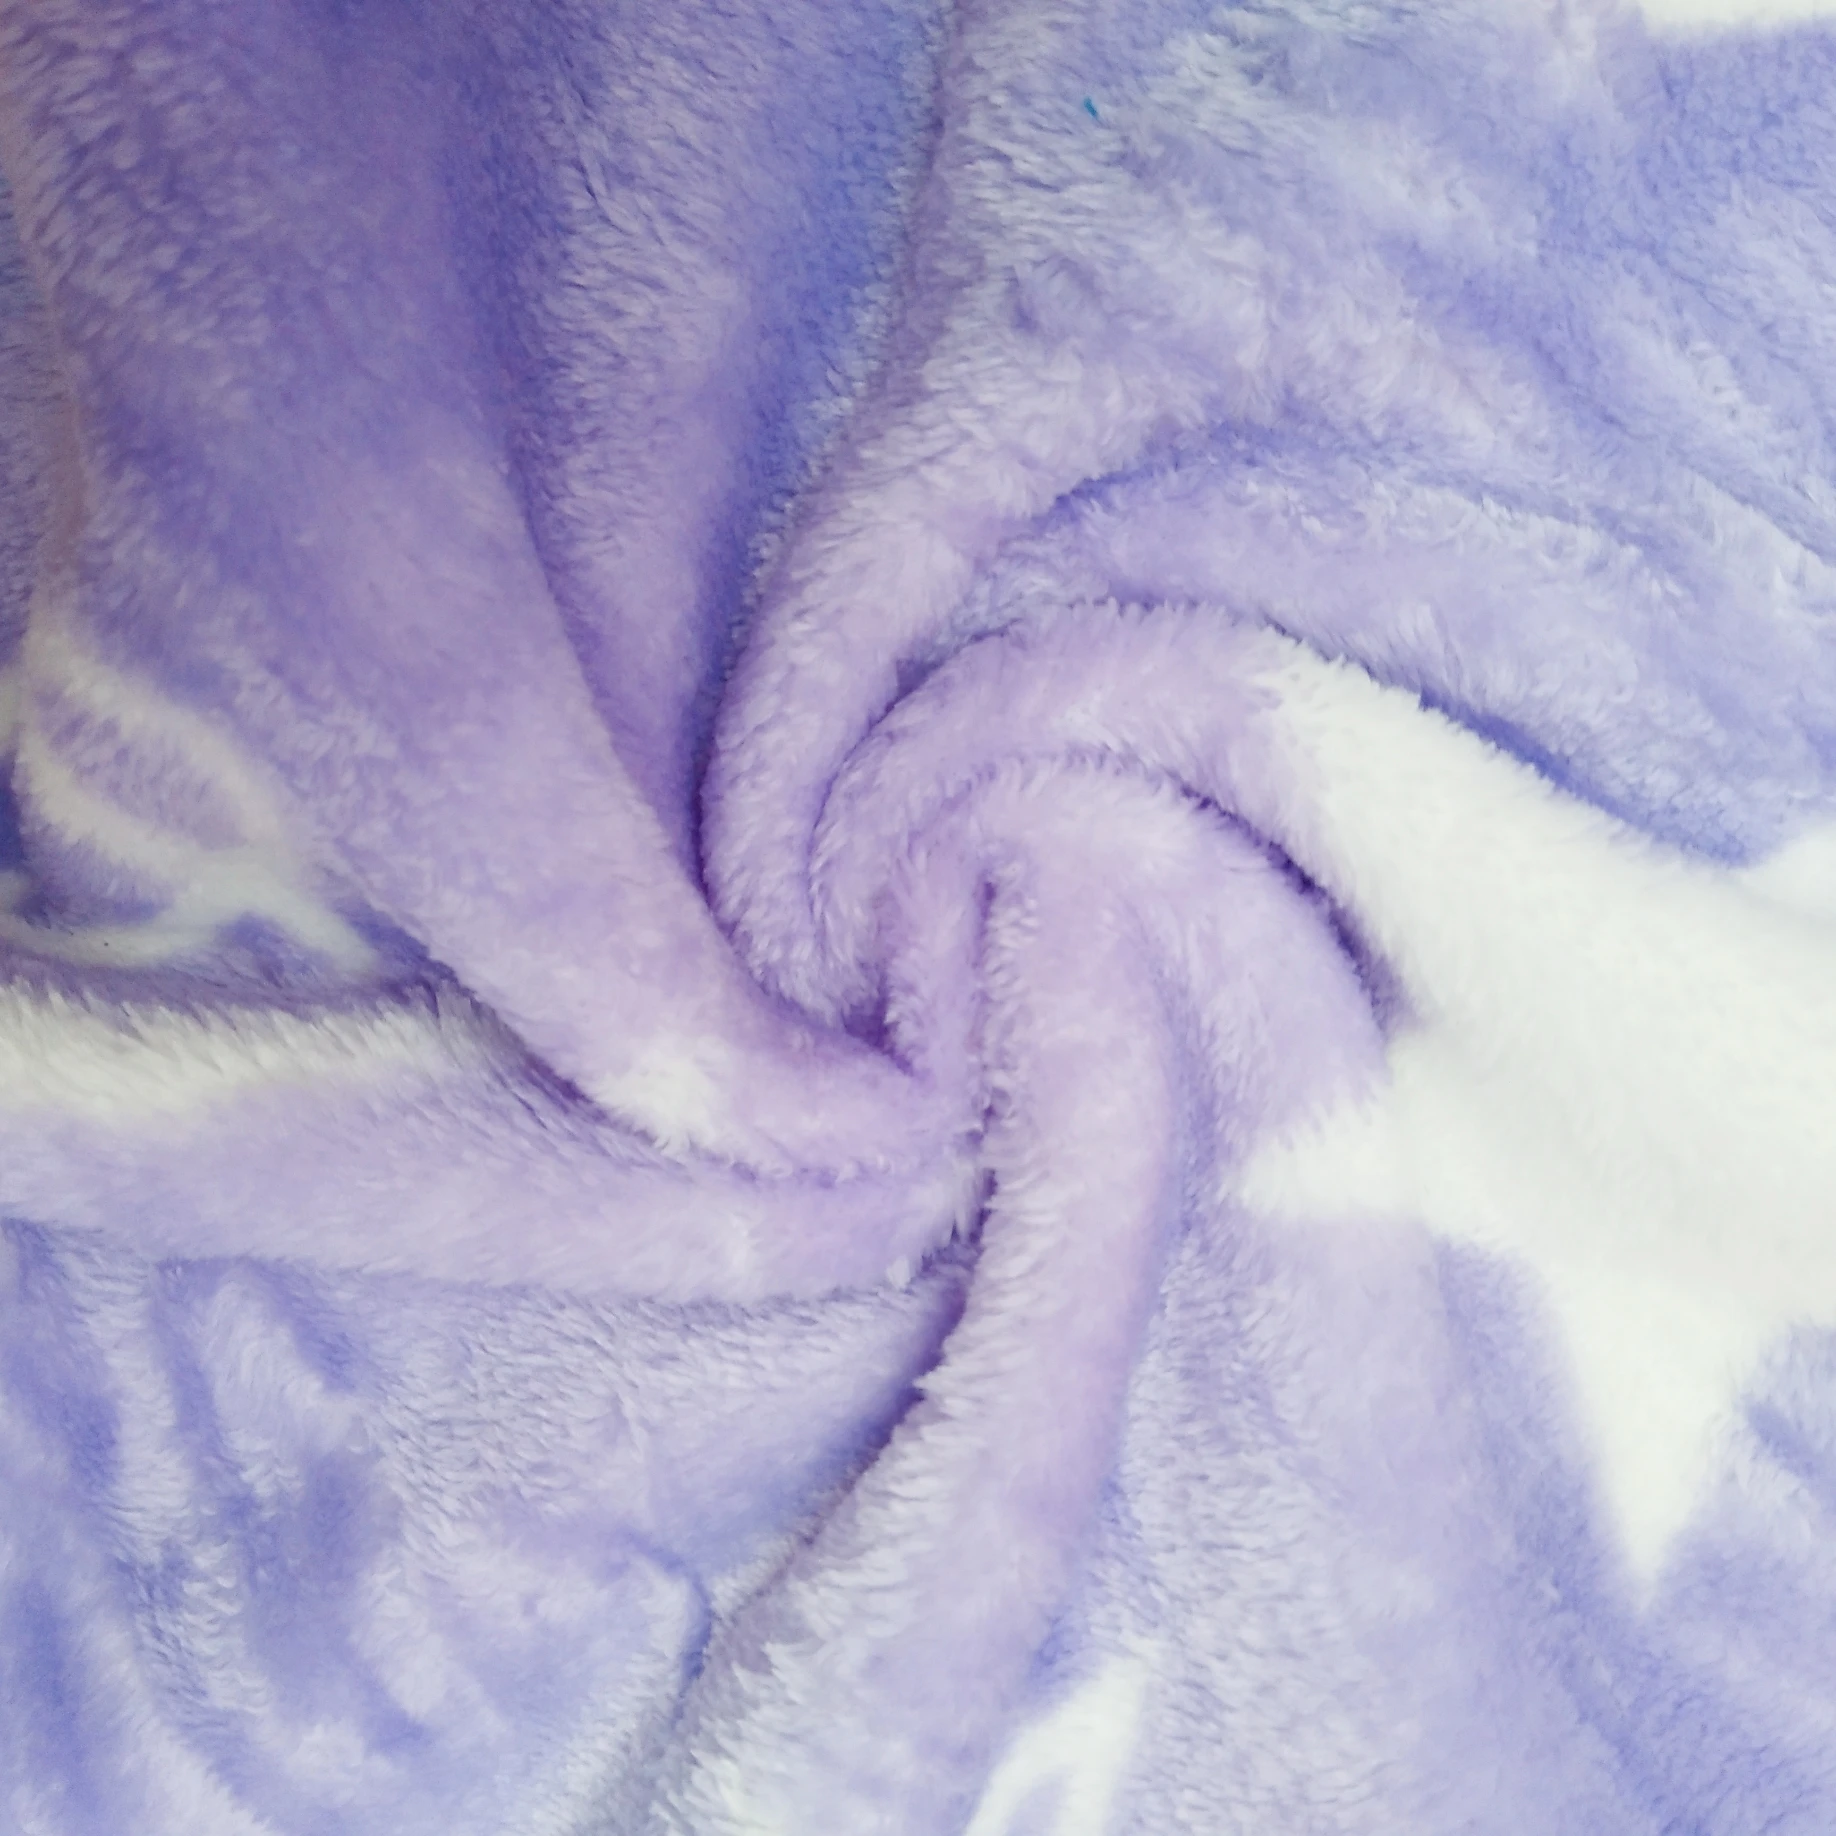 Мультяшное одеяло Duffy Bear, Стелла Лу, кролик, Фланелевое, фиолетовое, плюшевое, одиночное одеяло для девочки, s на кровать/диван, спальный чехол